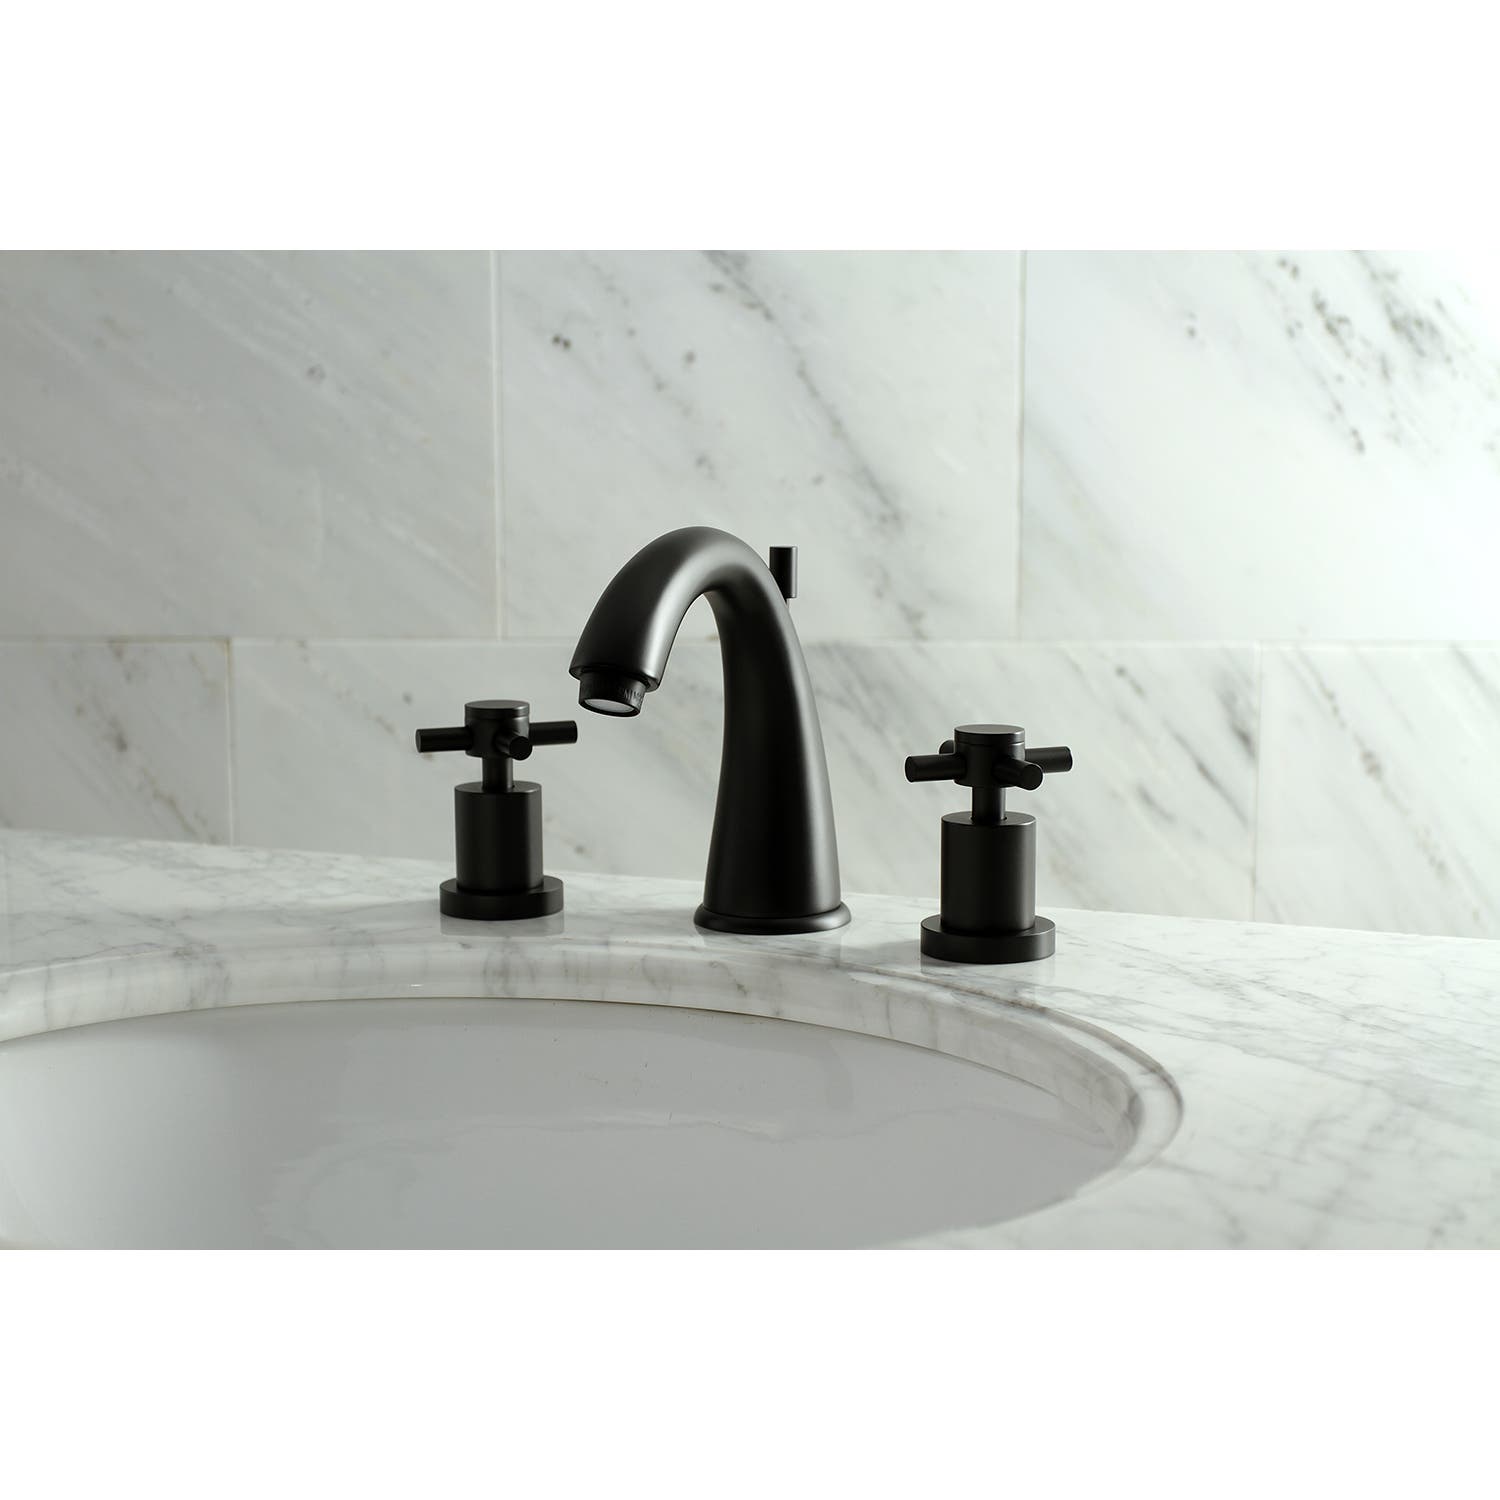 Matte Black Widespread Bathroom Faucet Feature: KS2960DX